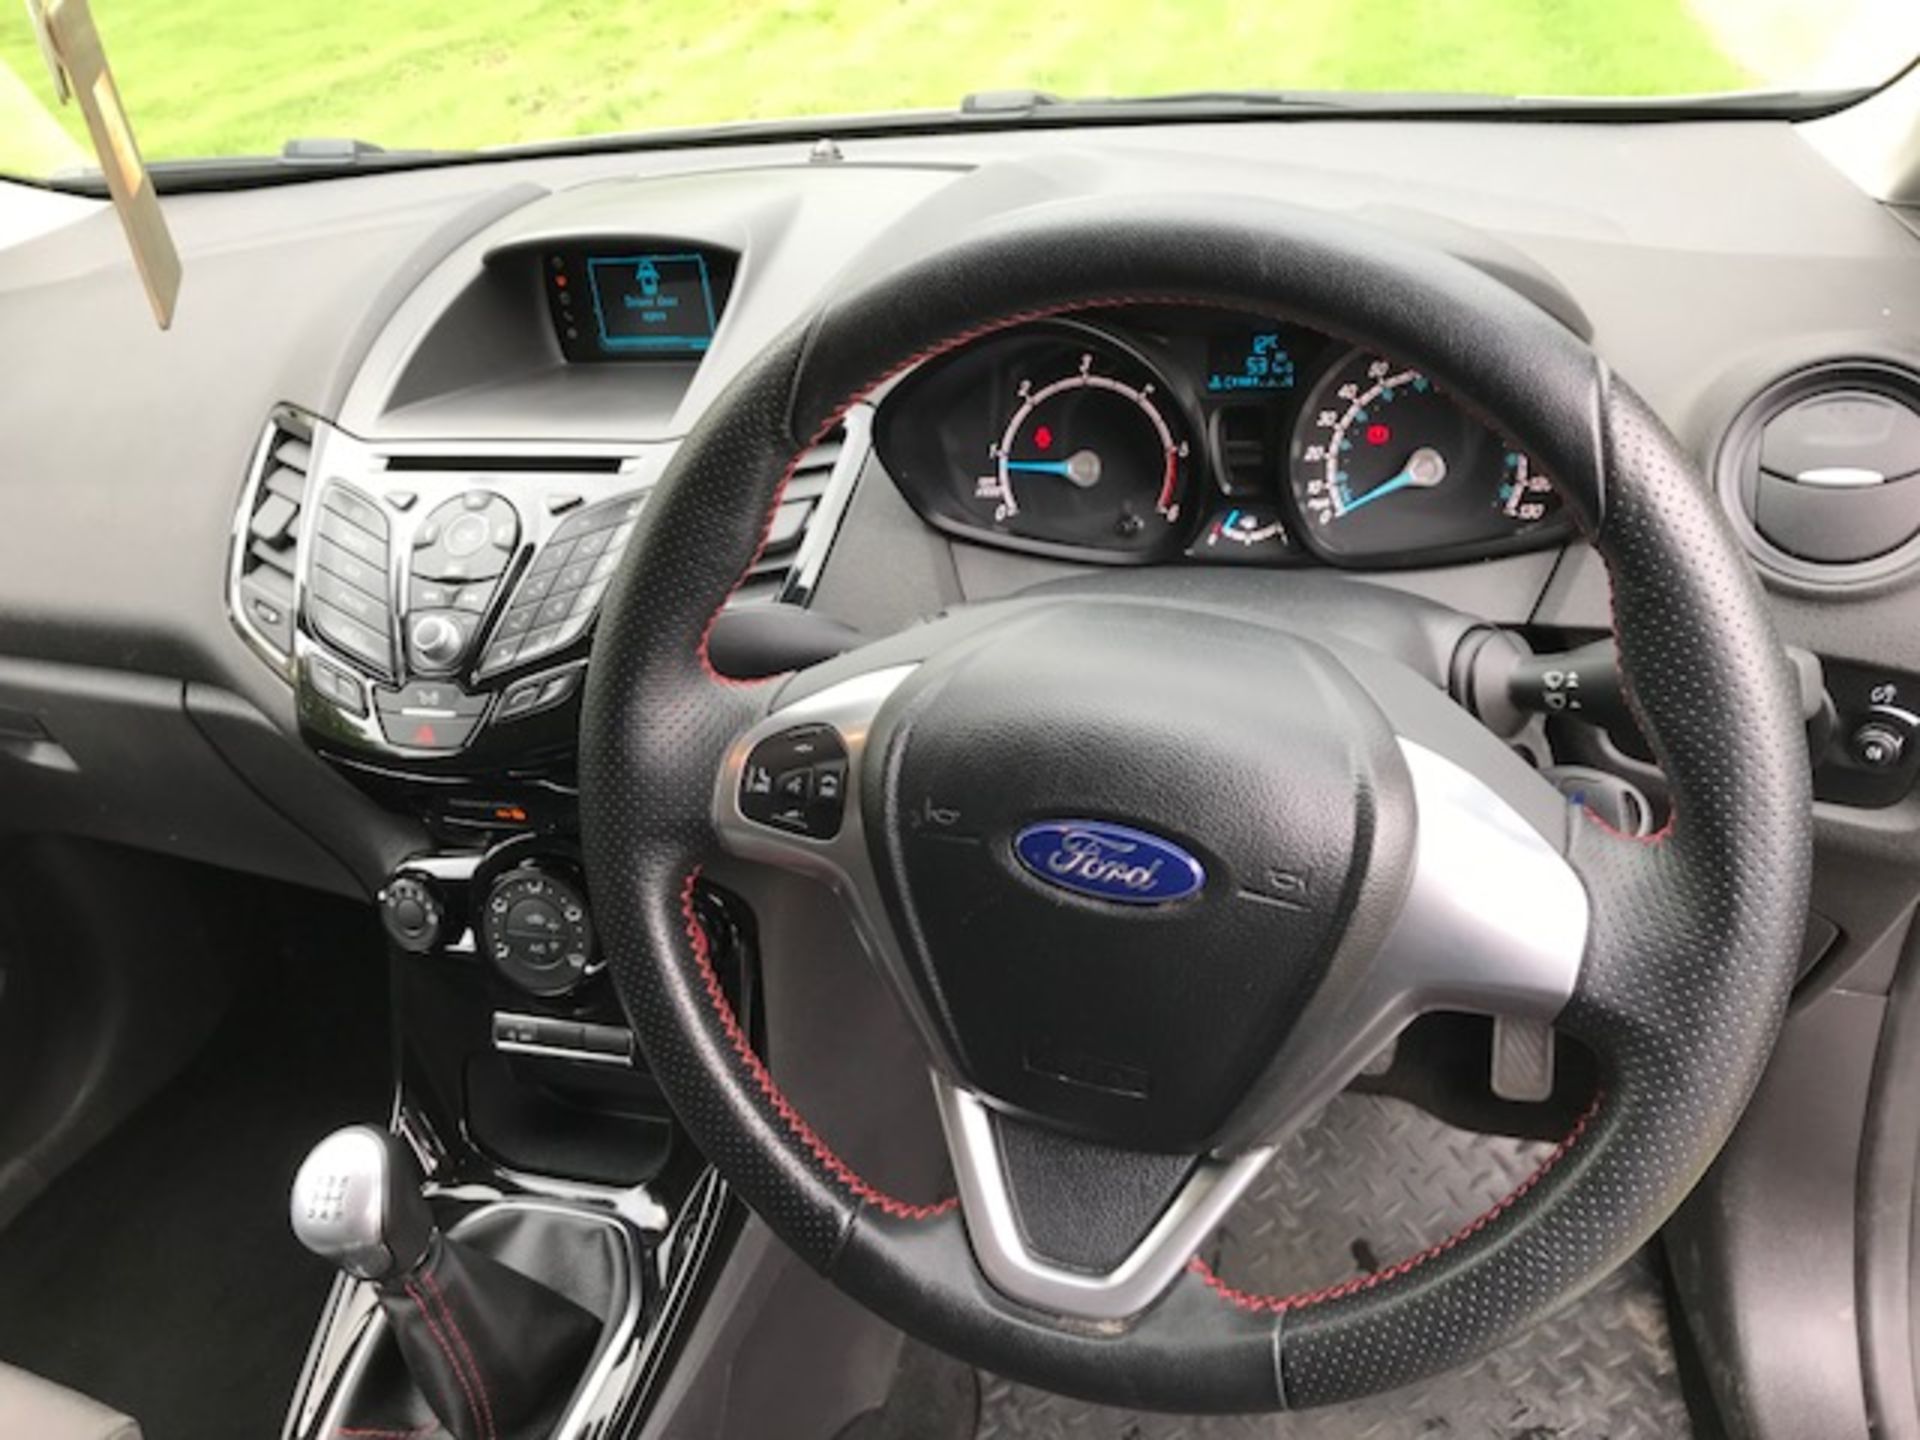 Ford Fiesta Base TDCI - full ST line body kit (NO VAT) - Image 20 of 25